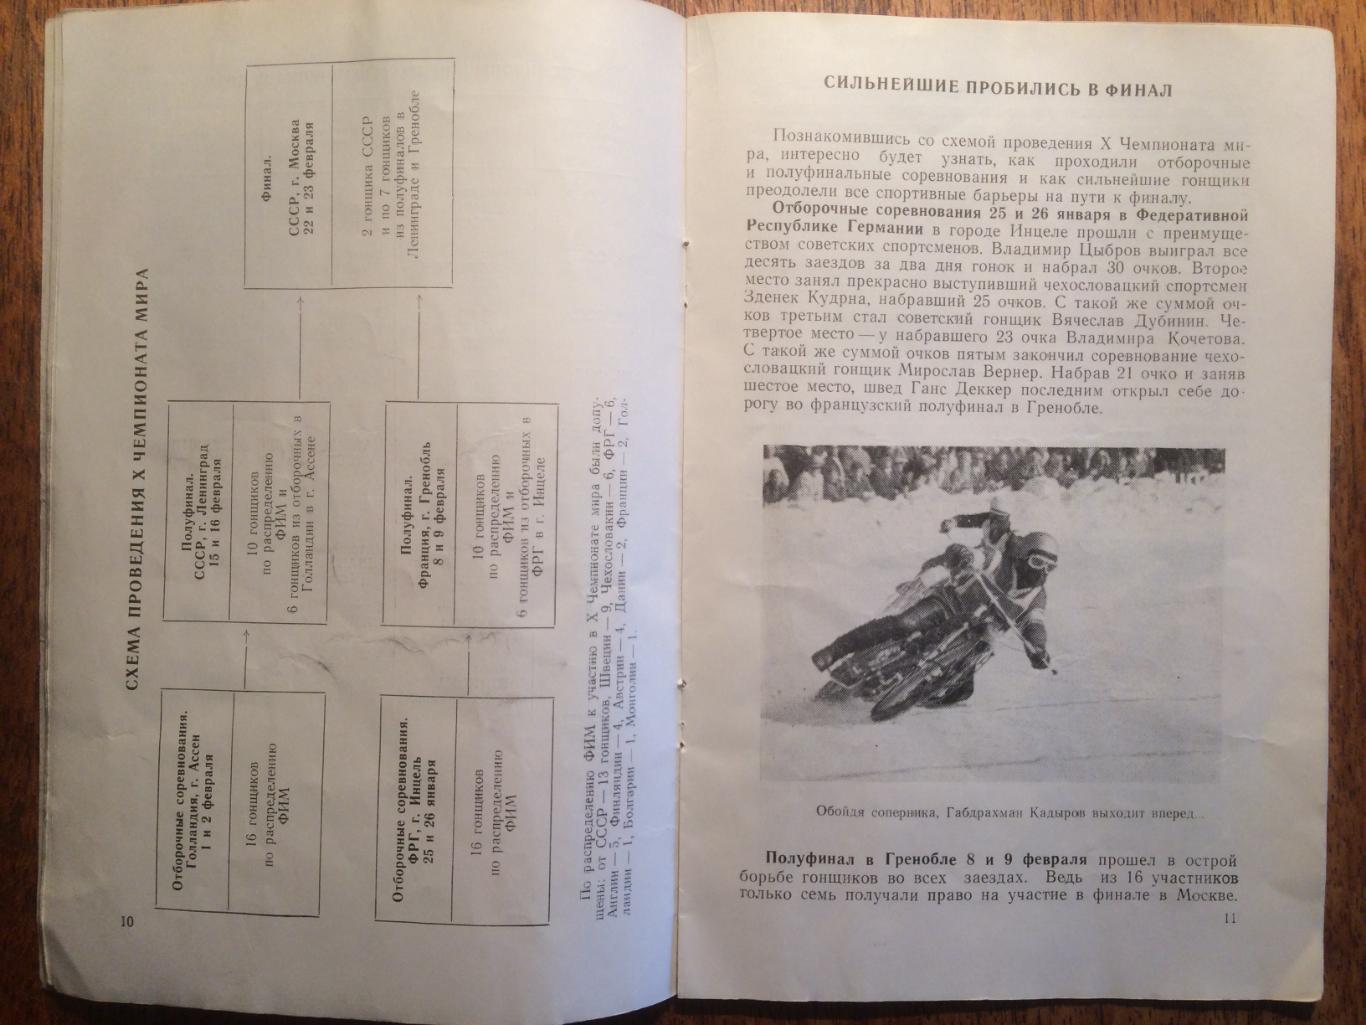 Мотогонки на льду Чемпионат мира 22,23.02.1975 Финал Спидвей 1